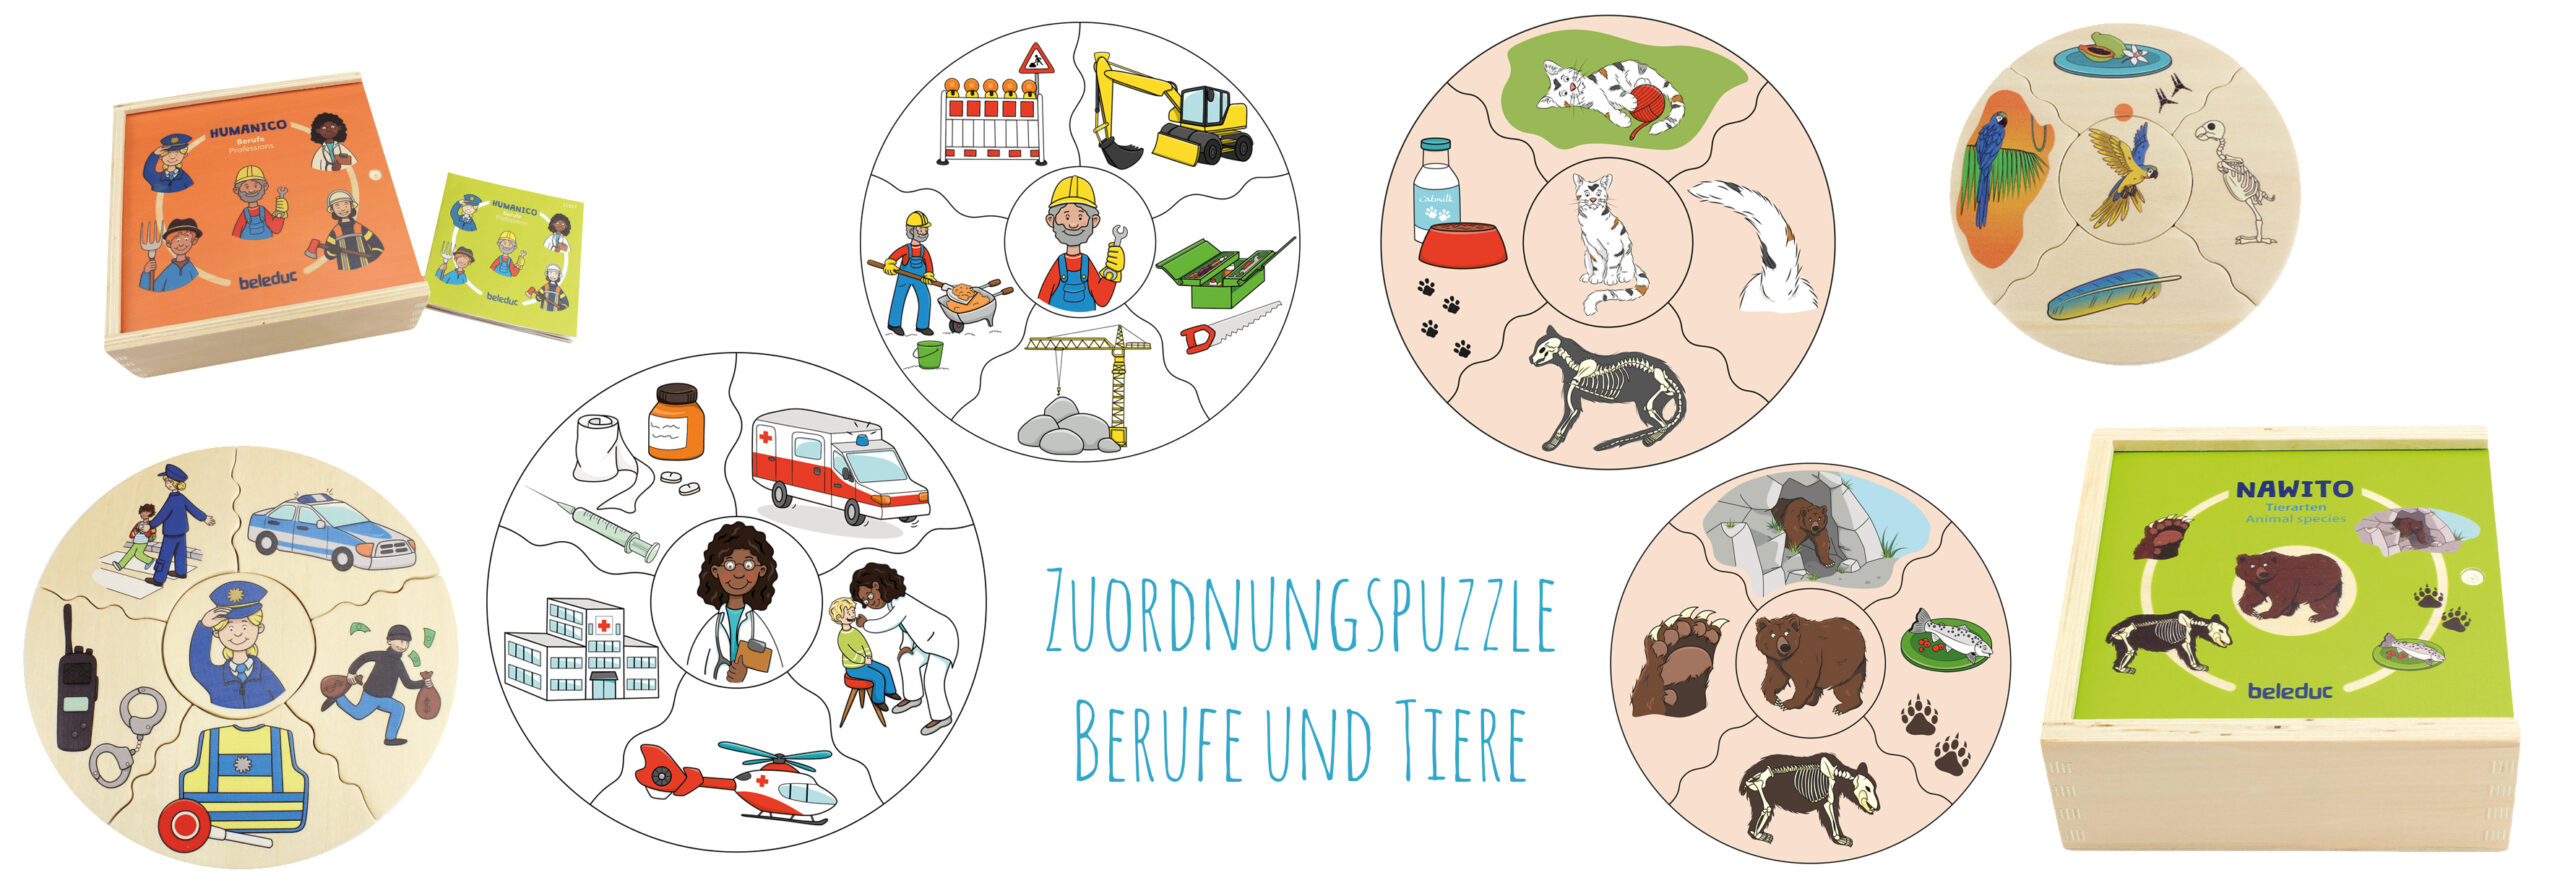 Corinna Arauner - beleduc Lernspielwaren - Zuordnungspuzzle Beruf und Tiere